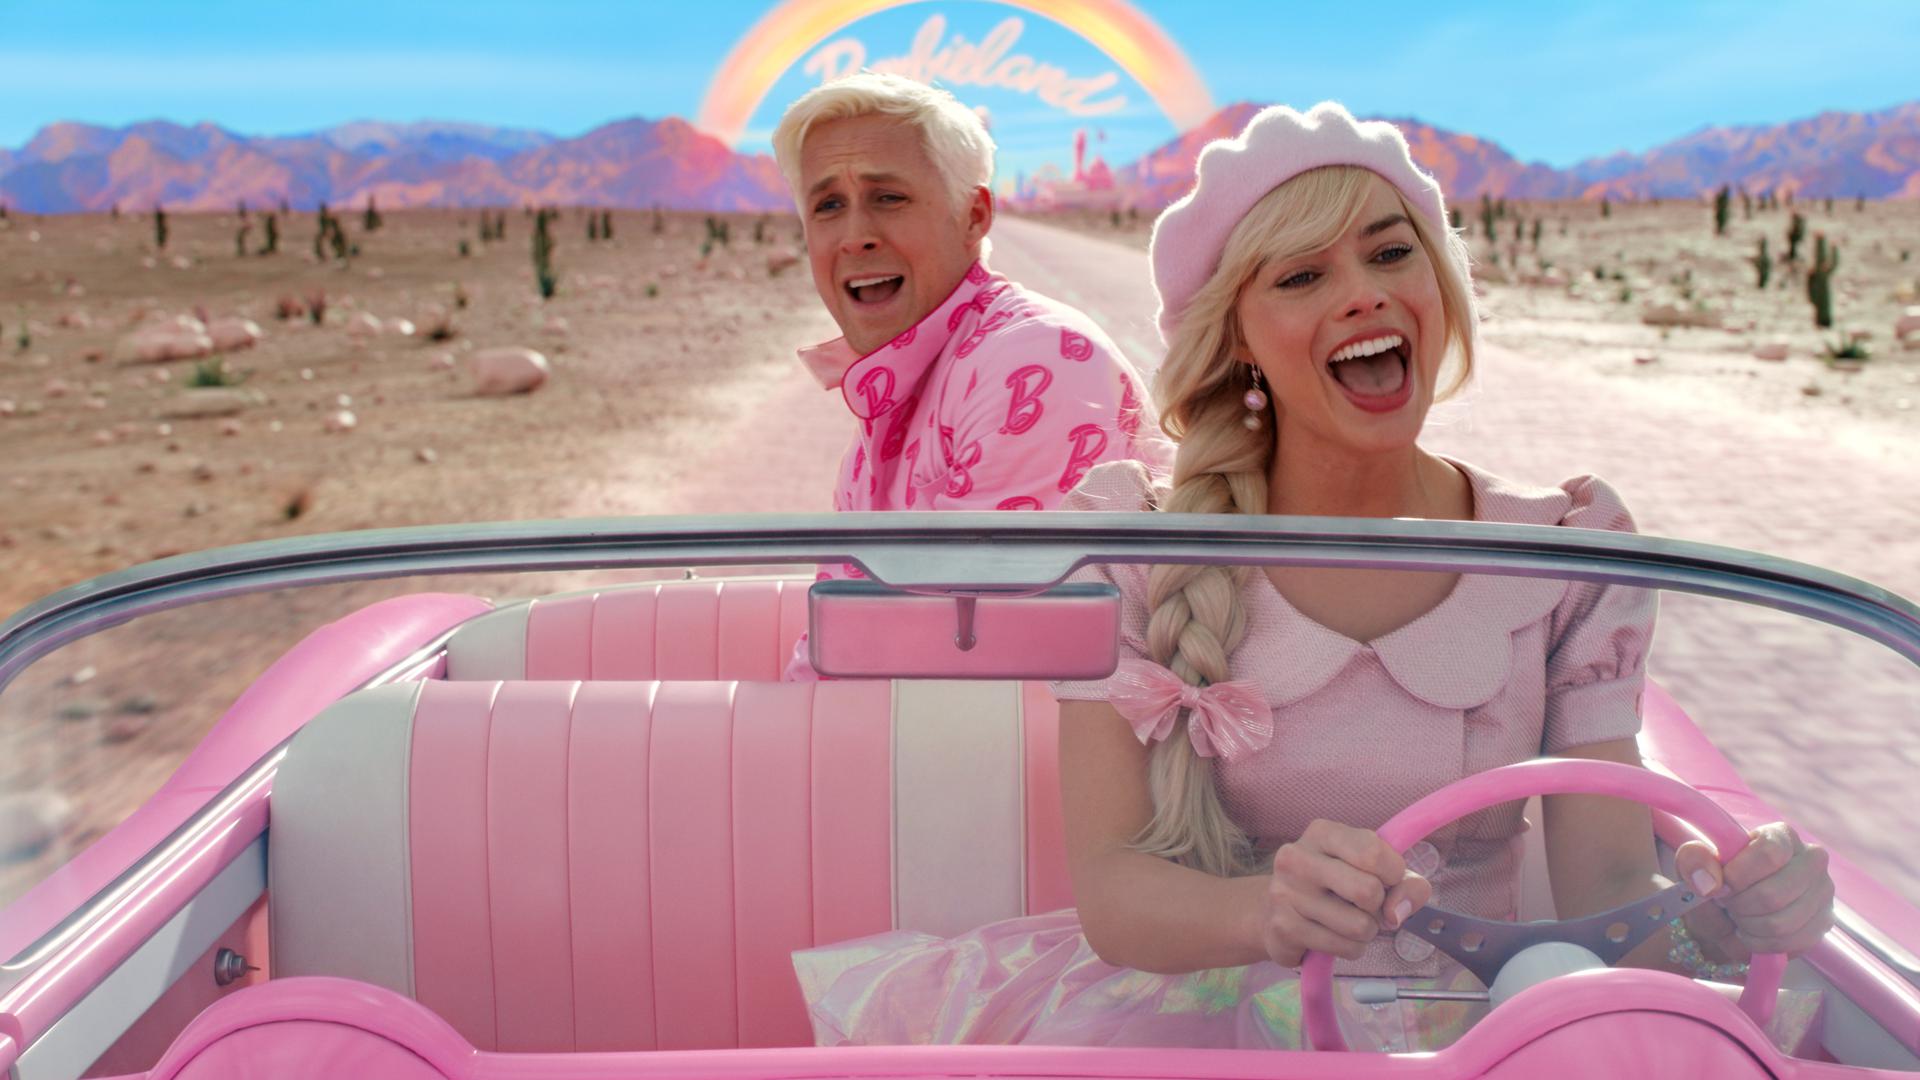 Ryan Gosling als Ken and Margot Robbie als Barbie in einer Szene der Films "Barbie".